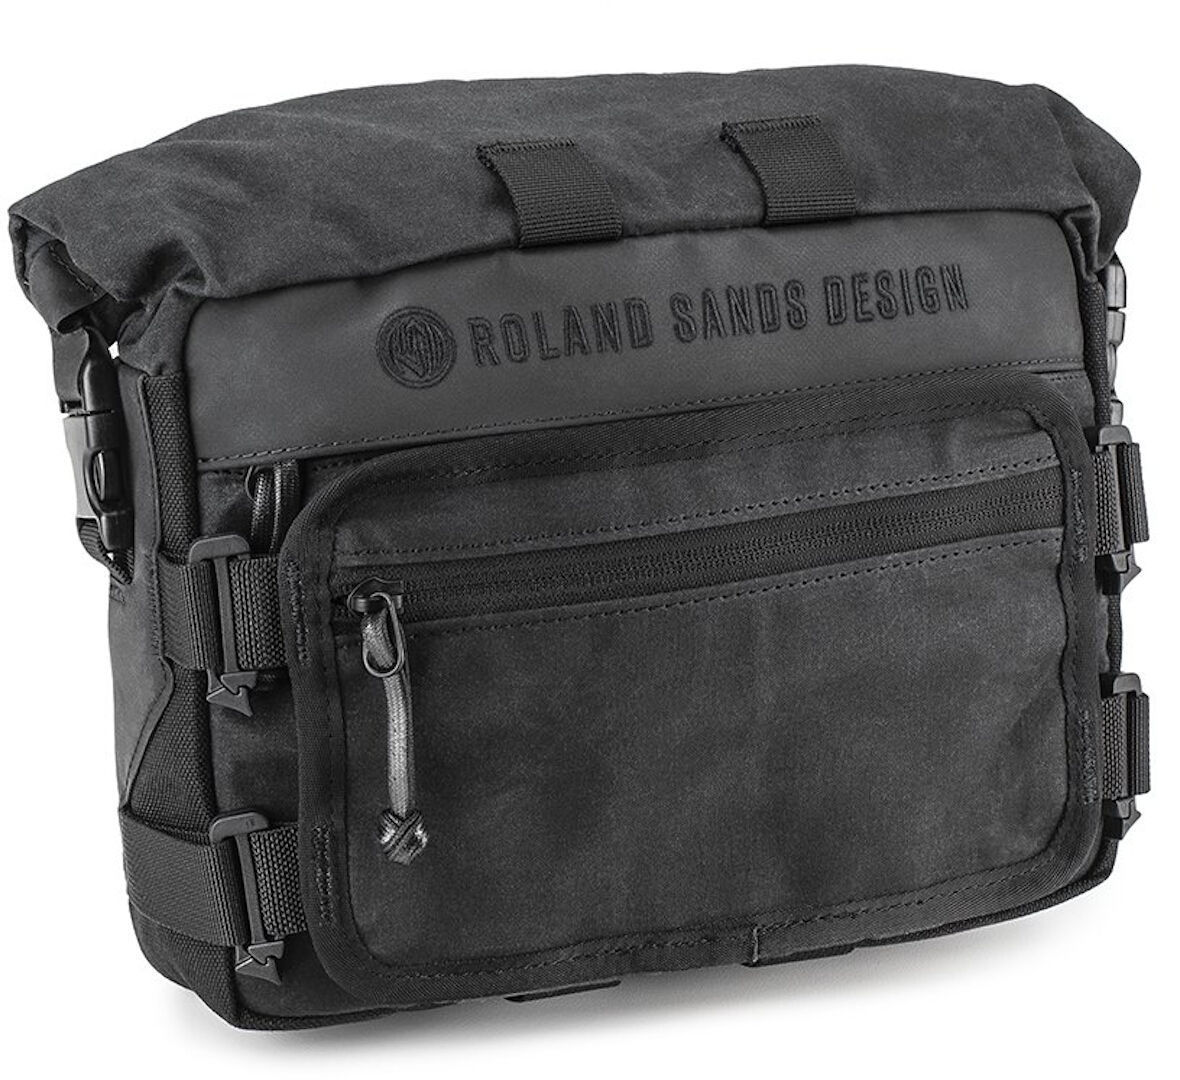 Сумка Kriega Roland Sands Design X Roam на руль, черная сумка на руль trolo клетка черная